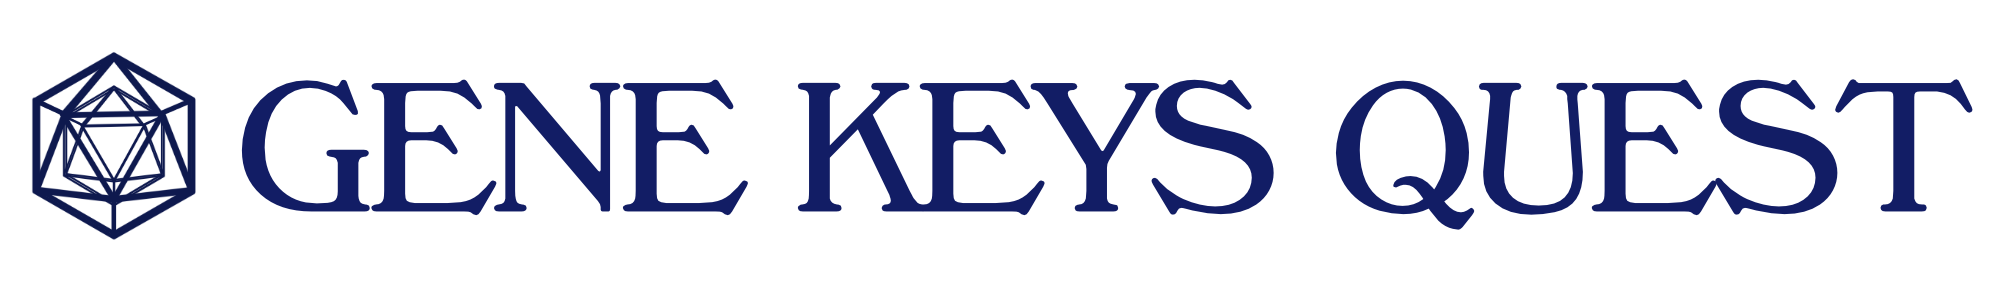 Gene Keys Quest logo